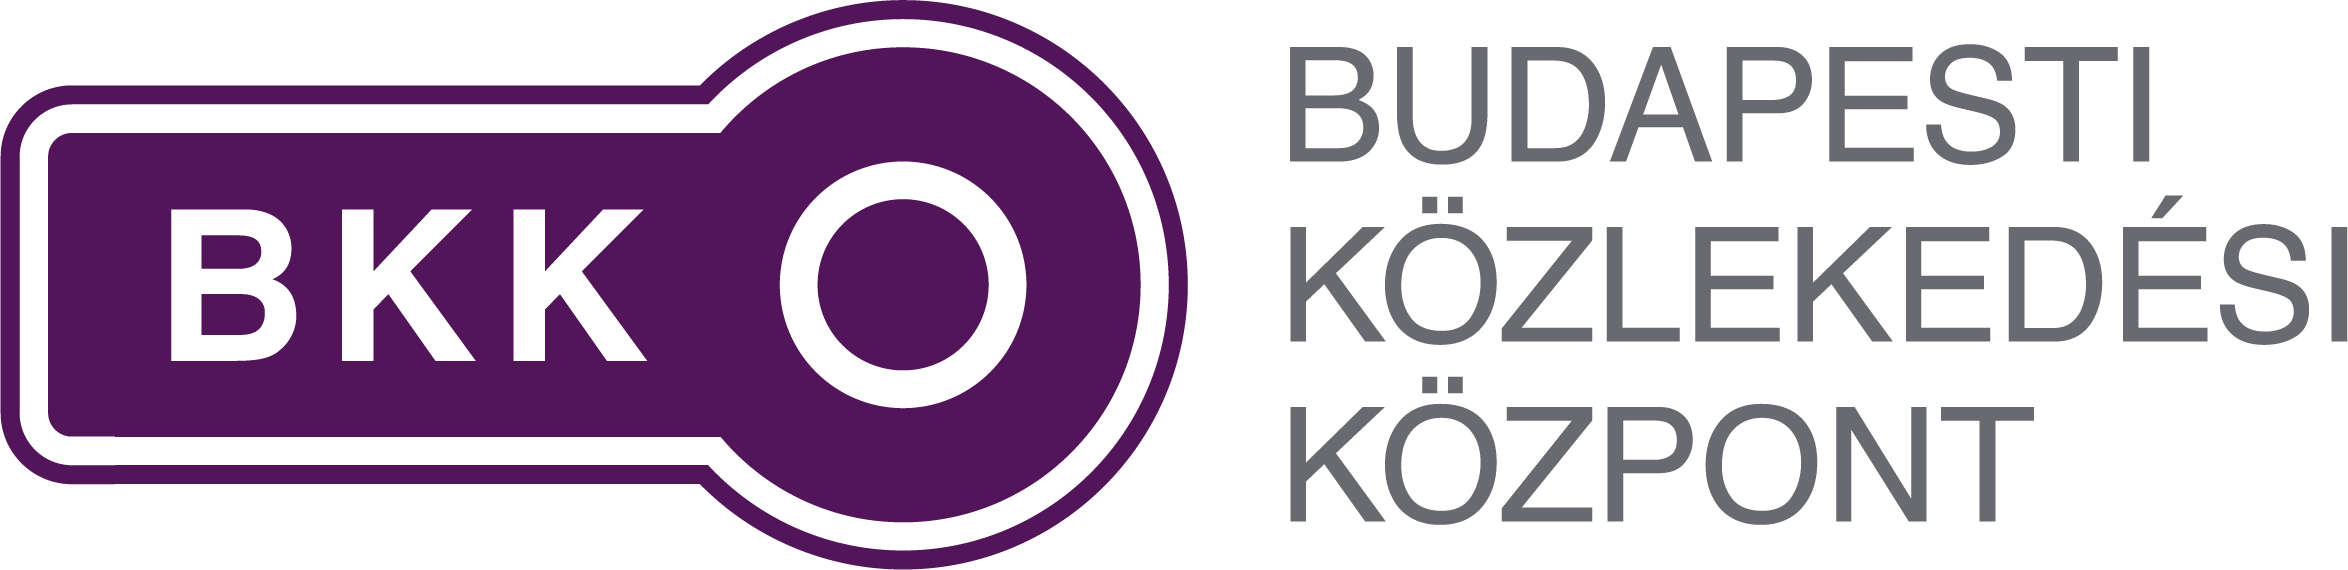 BKK - Budapesti Közlekedési Központ